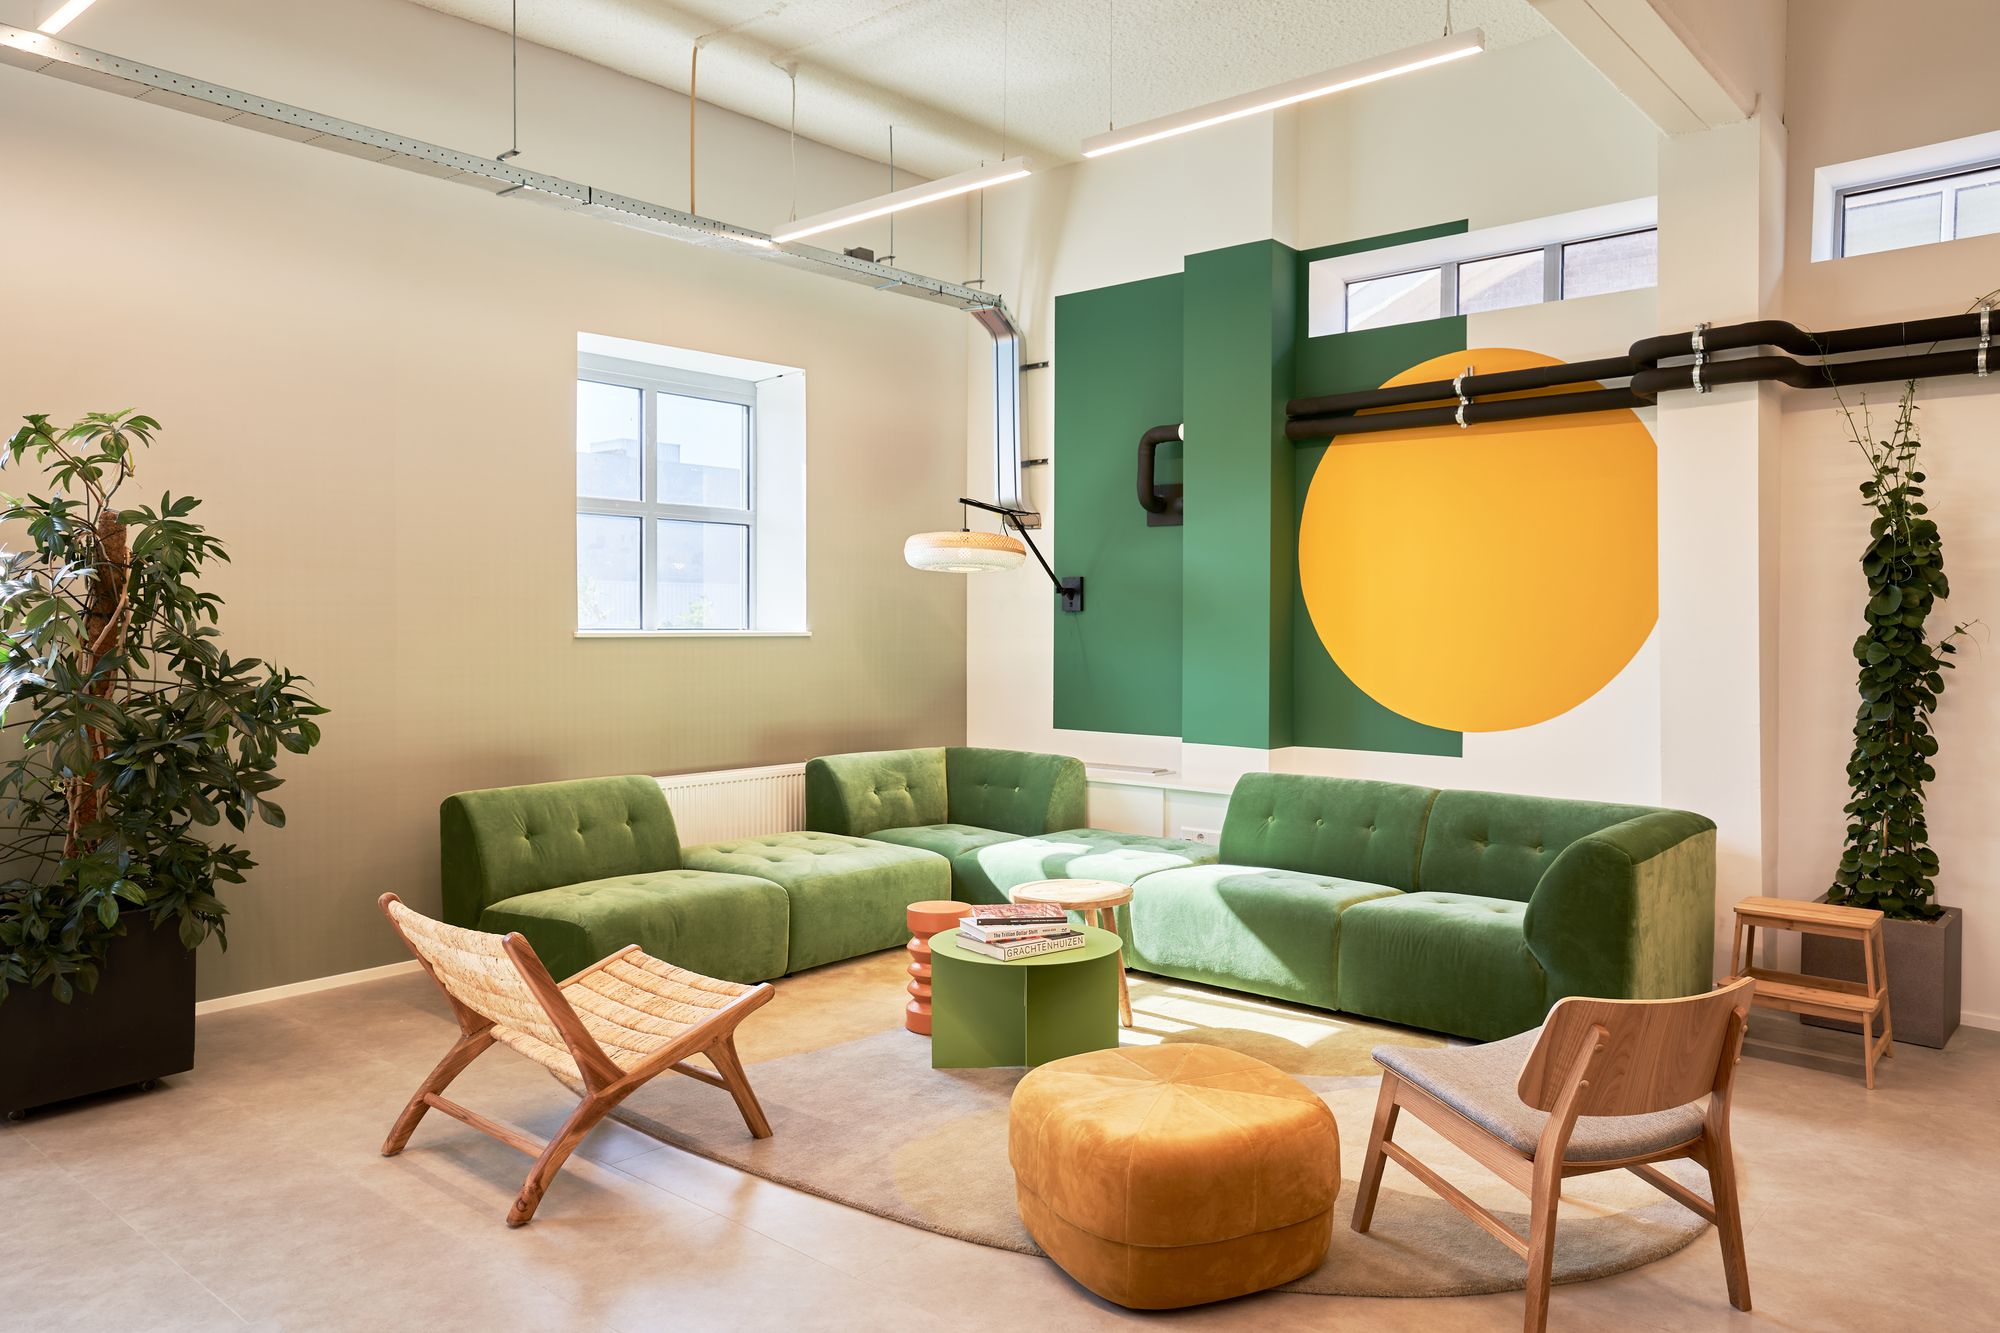 图片[2]|Sunrock办公室-阿姆斯特丹|ART-Arrakis | 建筑室内设计的创新与灵感